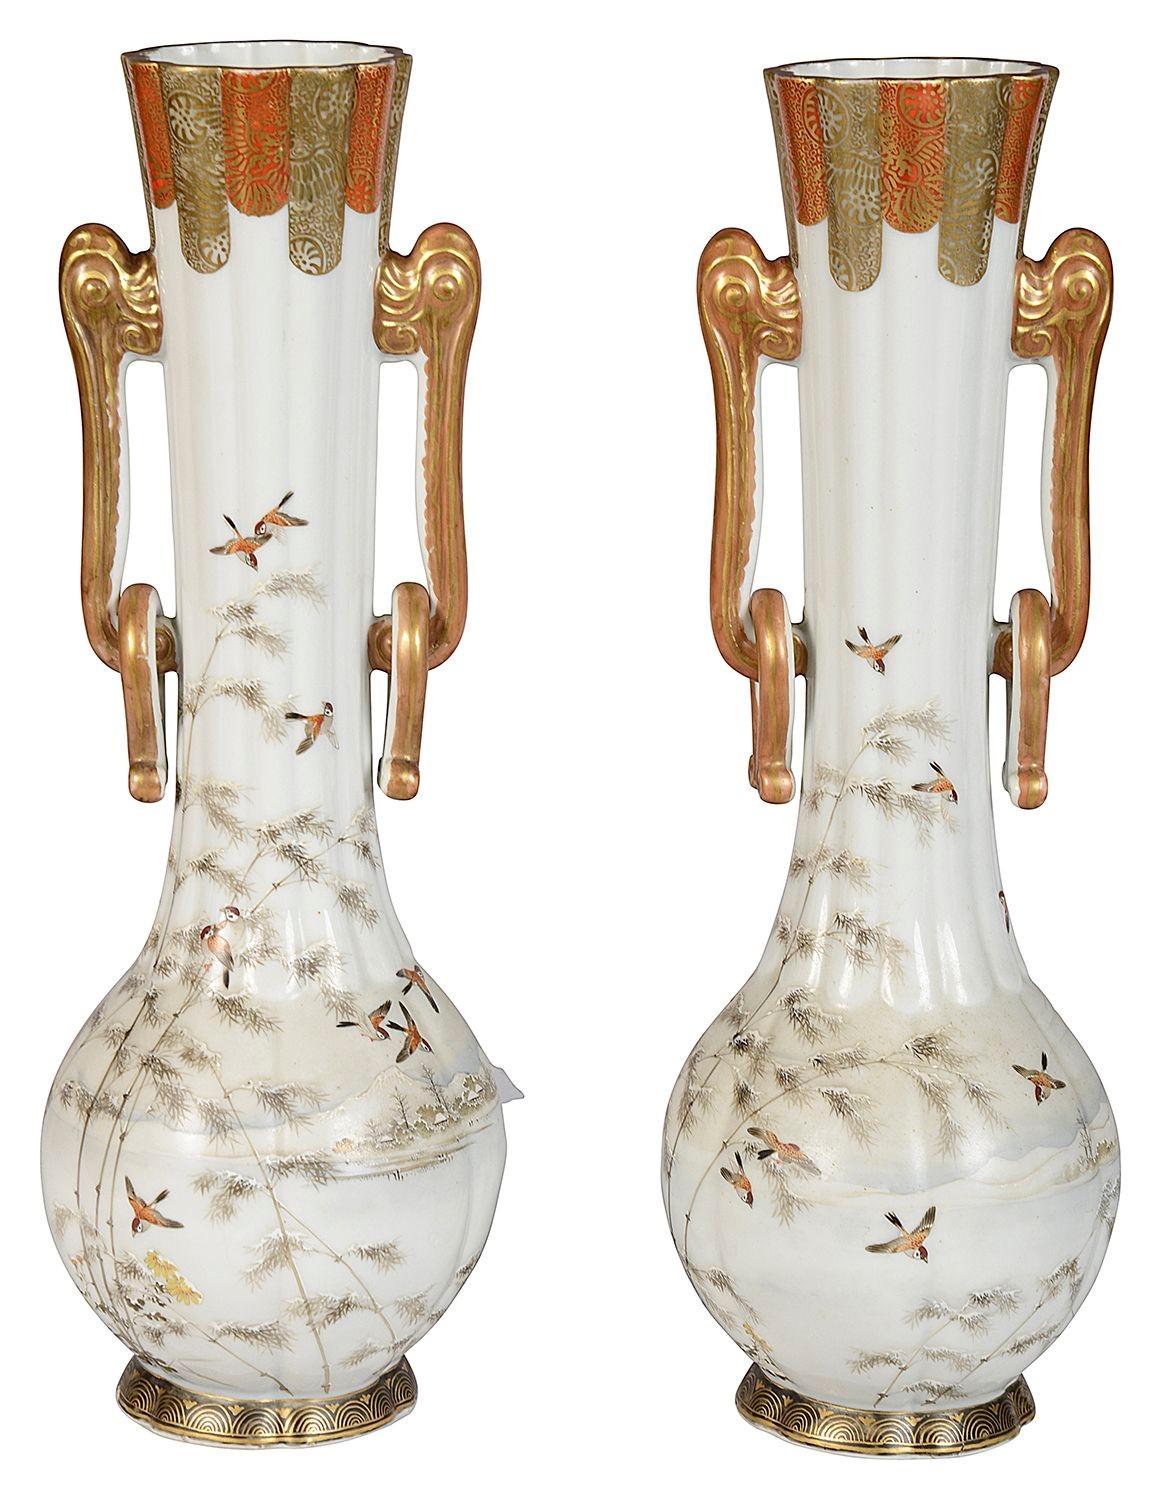 Paire de vases/lampes à deux anses Kutani japonais de la fin du XIXe siècle, de belle qualité. Chacun d'entre eux présente de magnifiques scènes peintes à la main de martinets volant dans les airs, avec des montagnes et des lacs en arrière-plan.